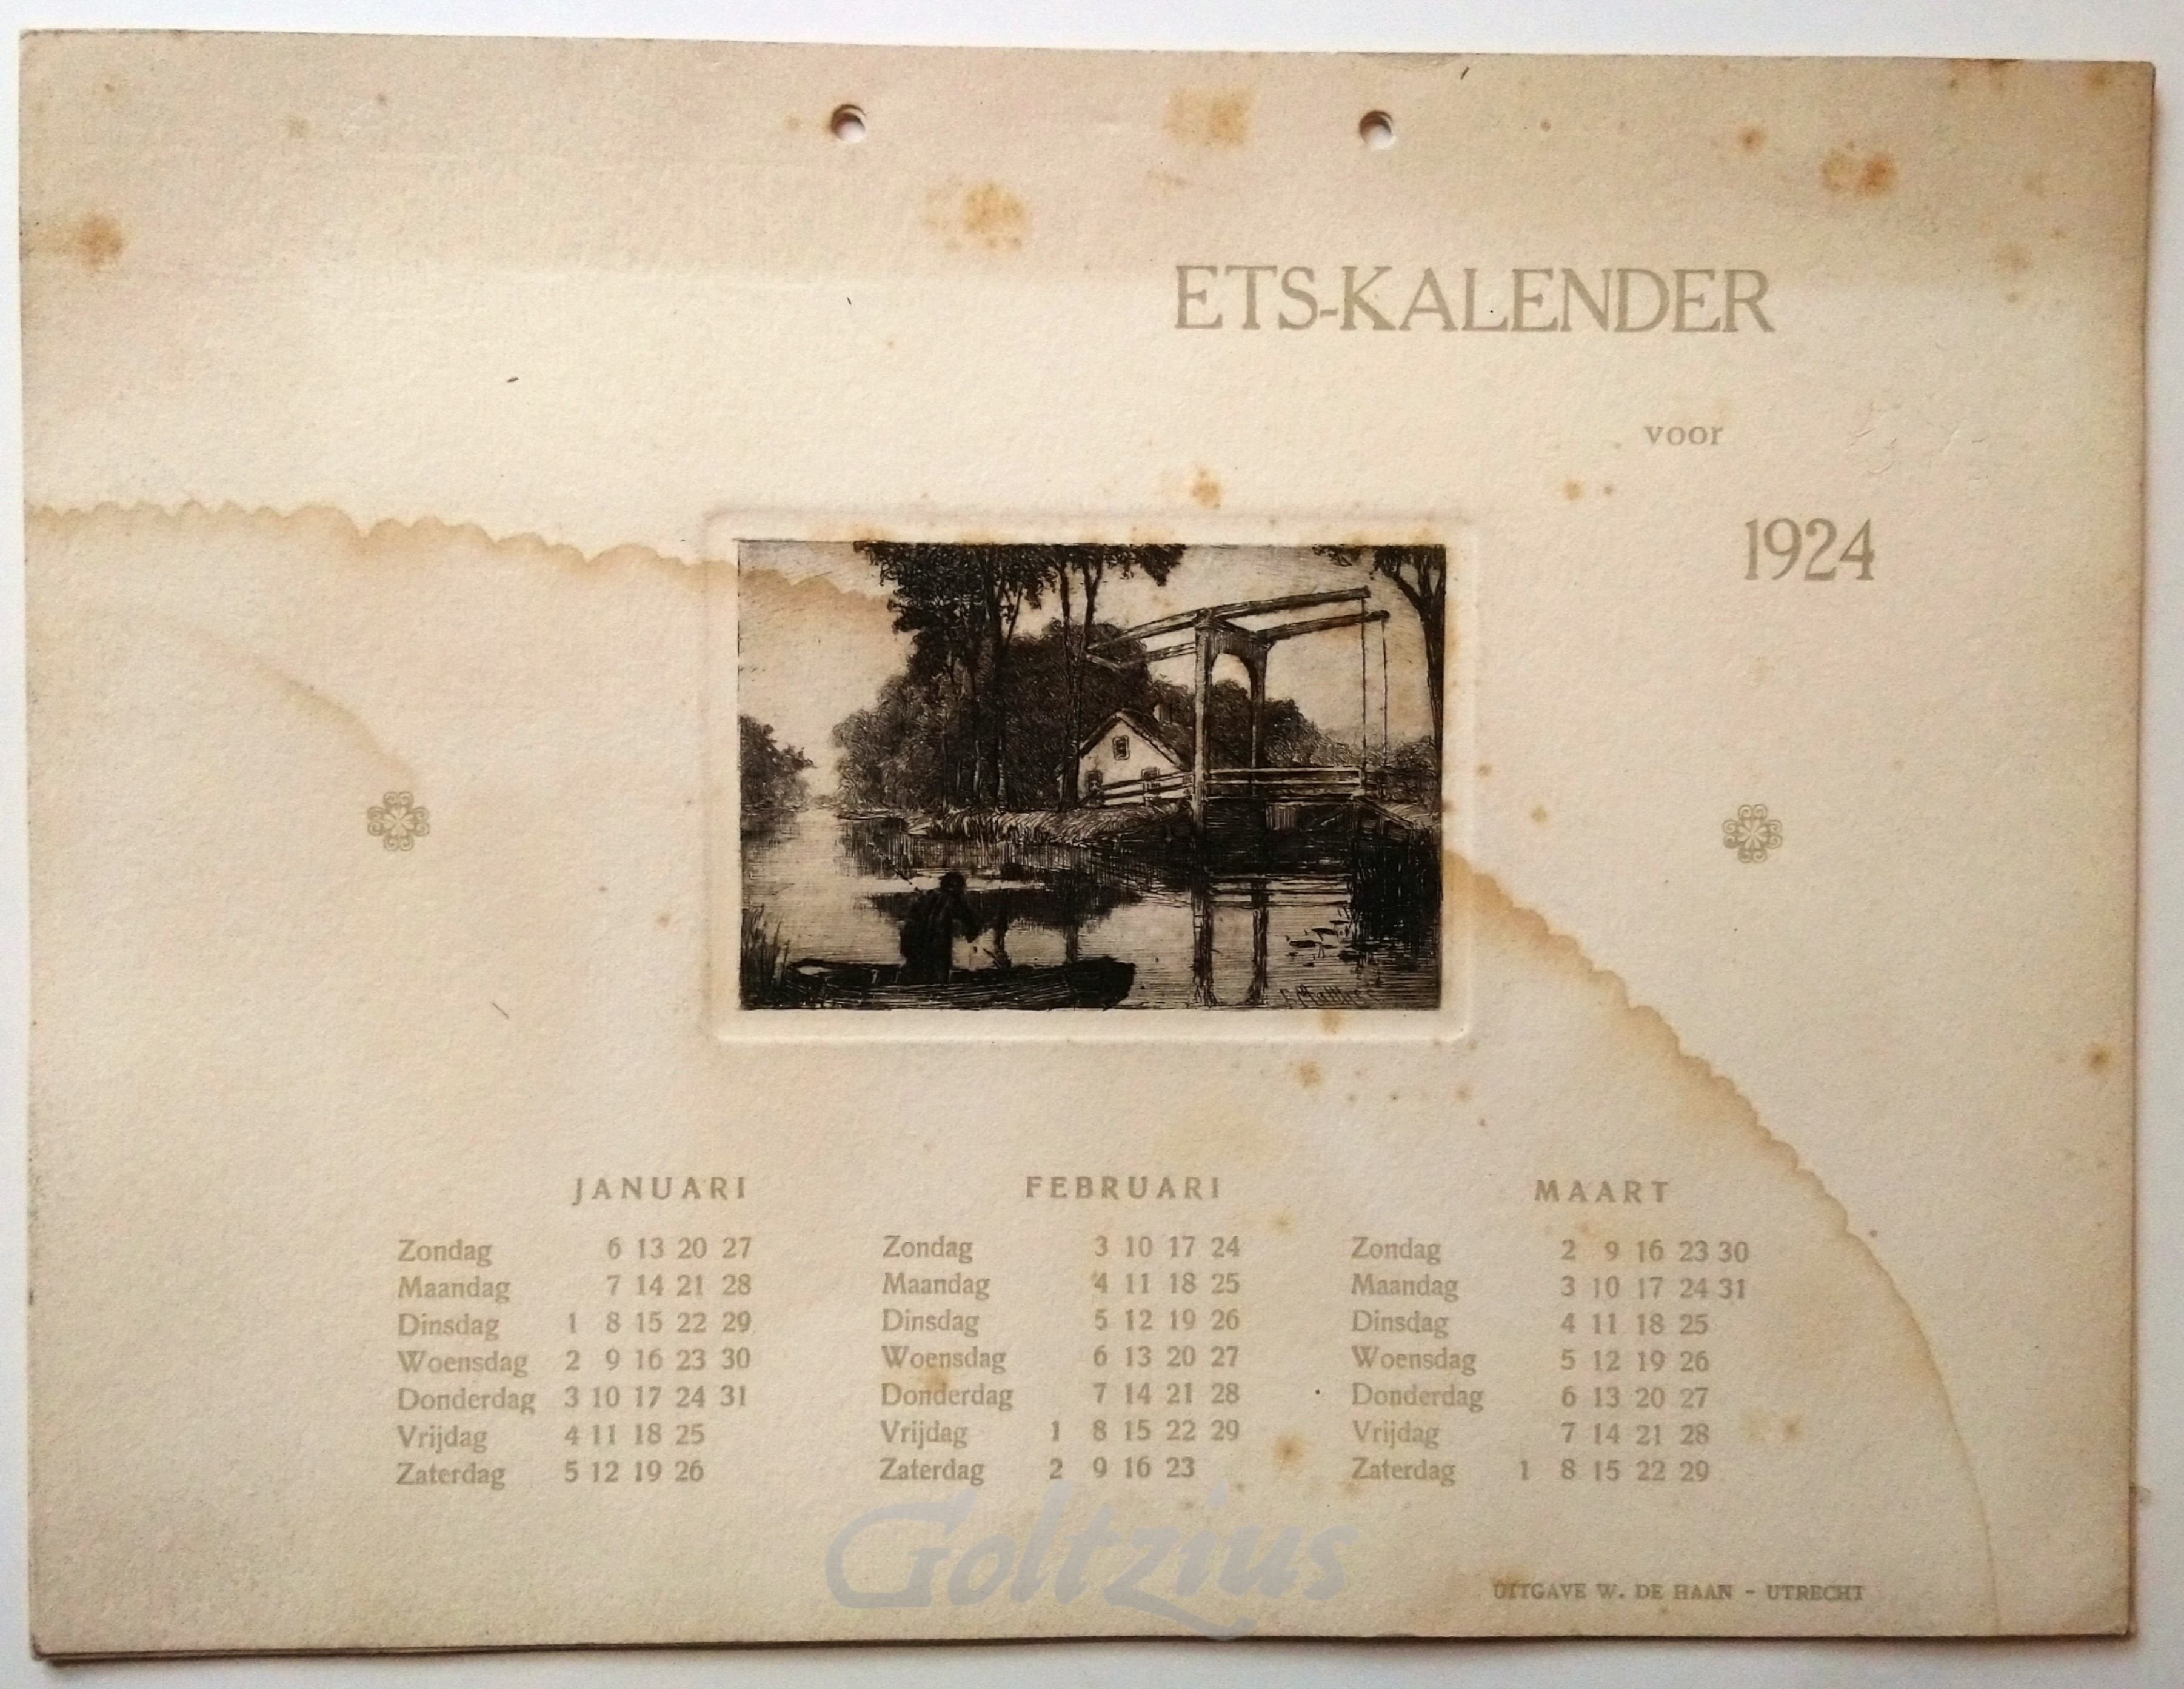 MATTHES, OSKAR PAUL, Ets-kalender voor 1924